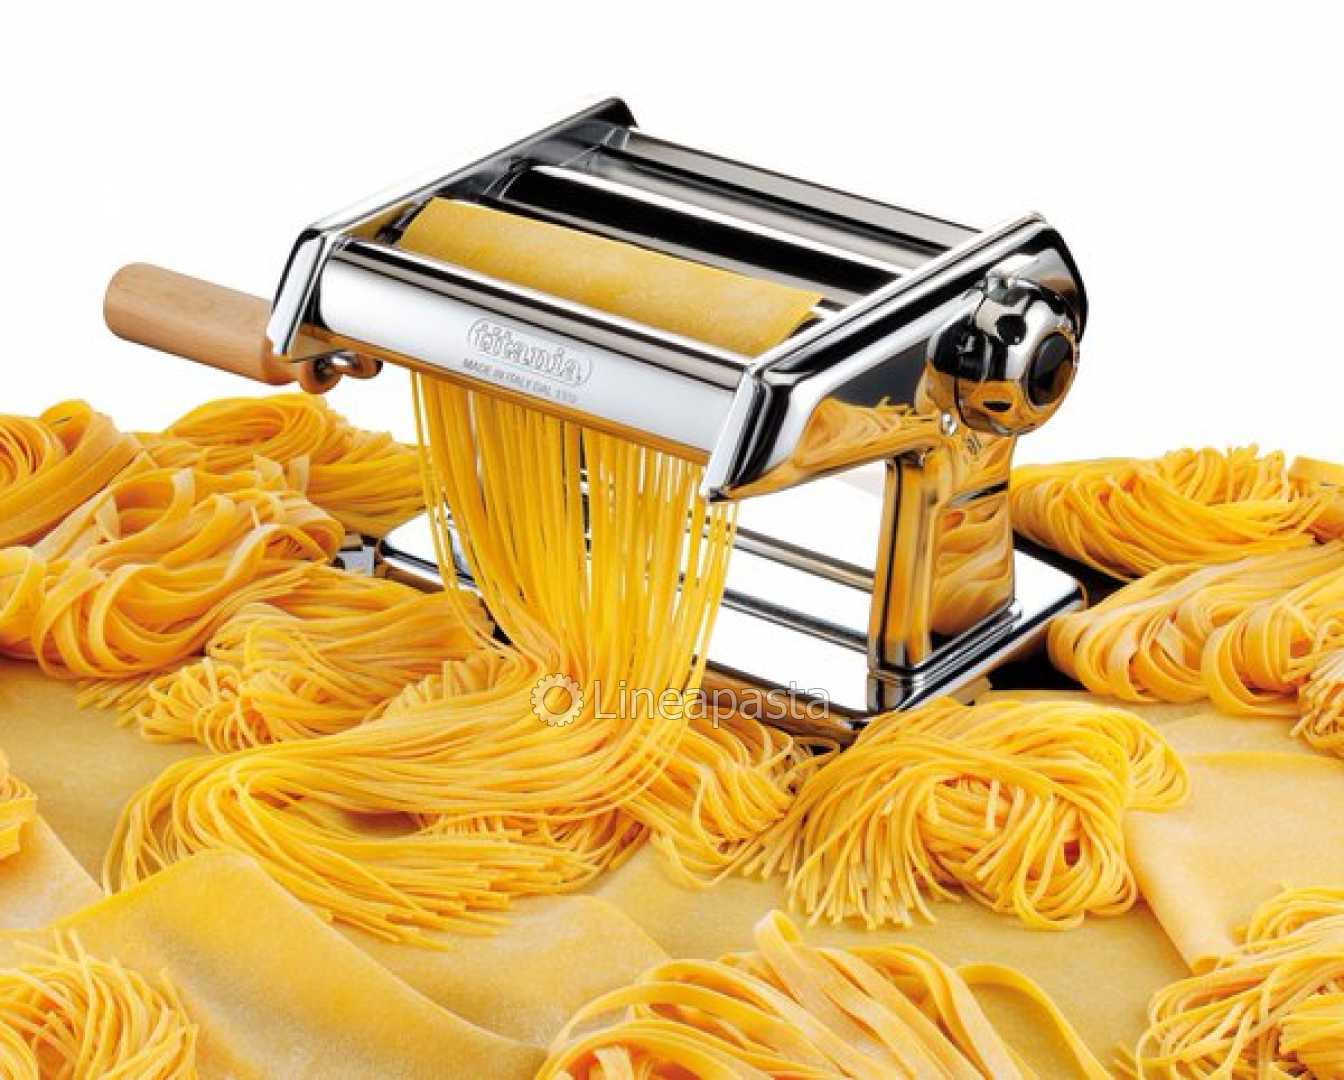 Imperia Simplex Pasta Machine Attachment, 12 mm Reginette